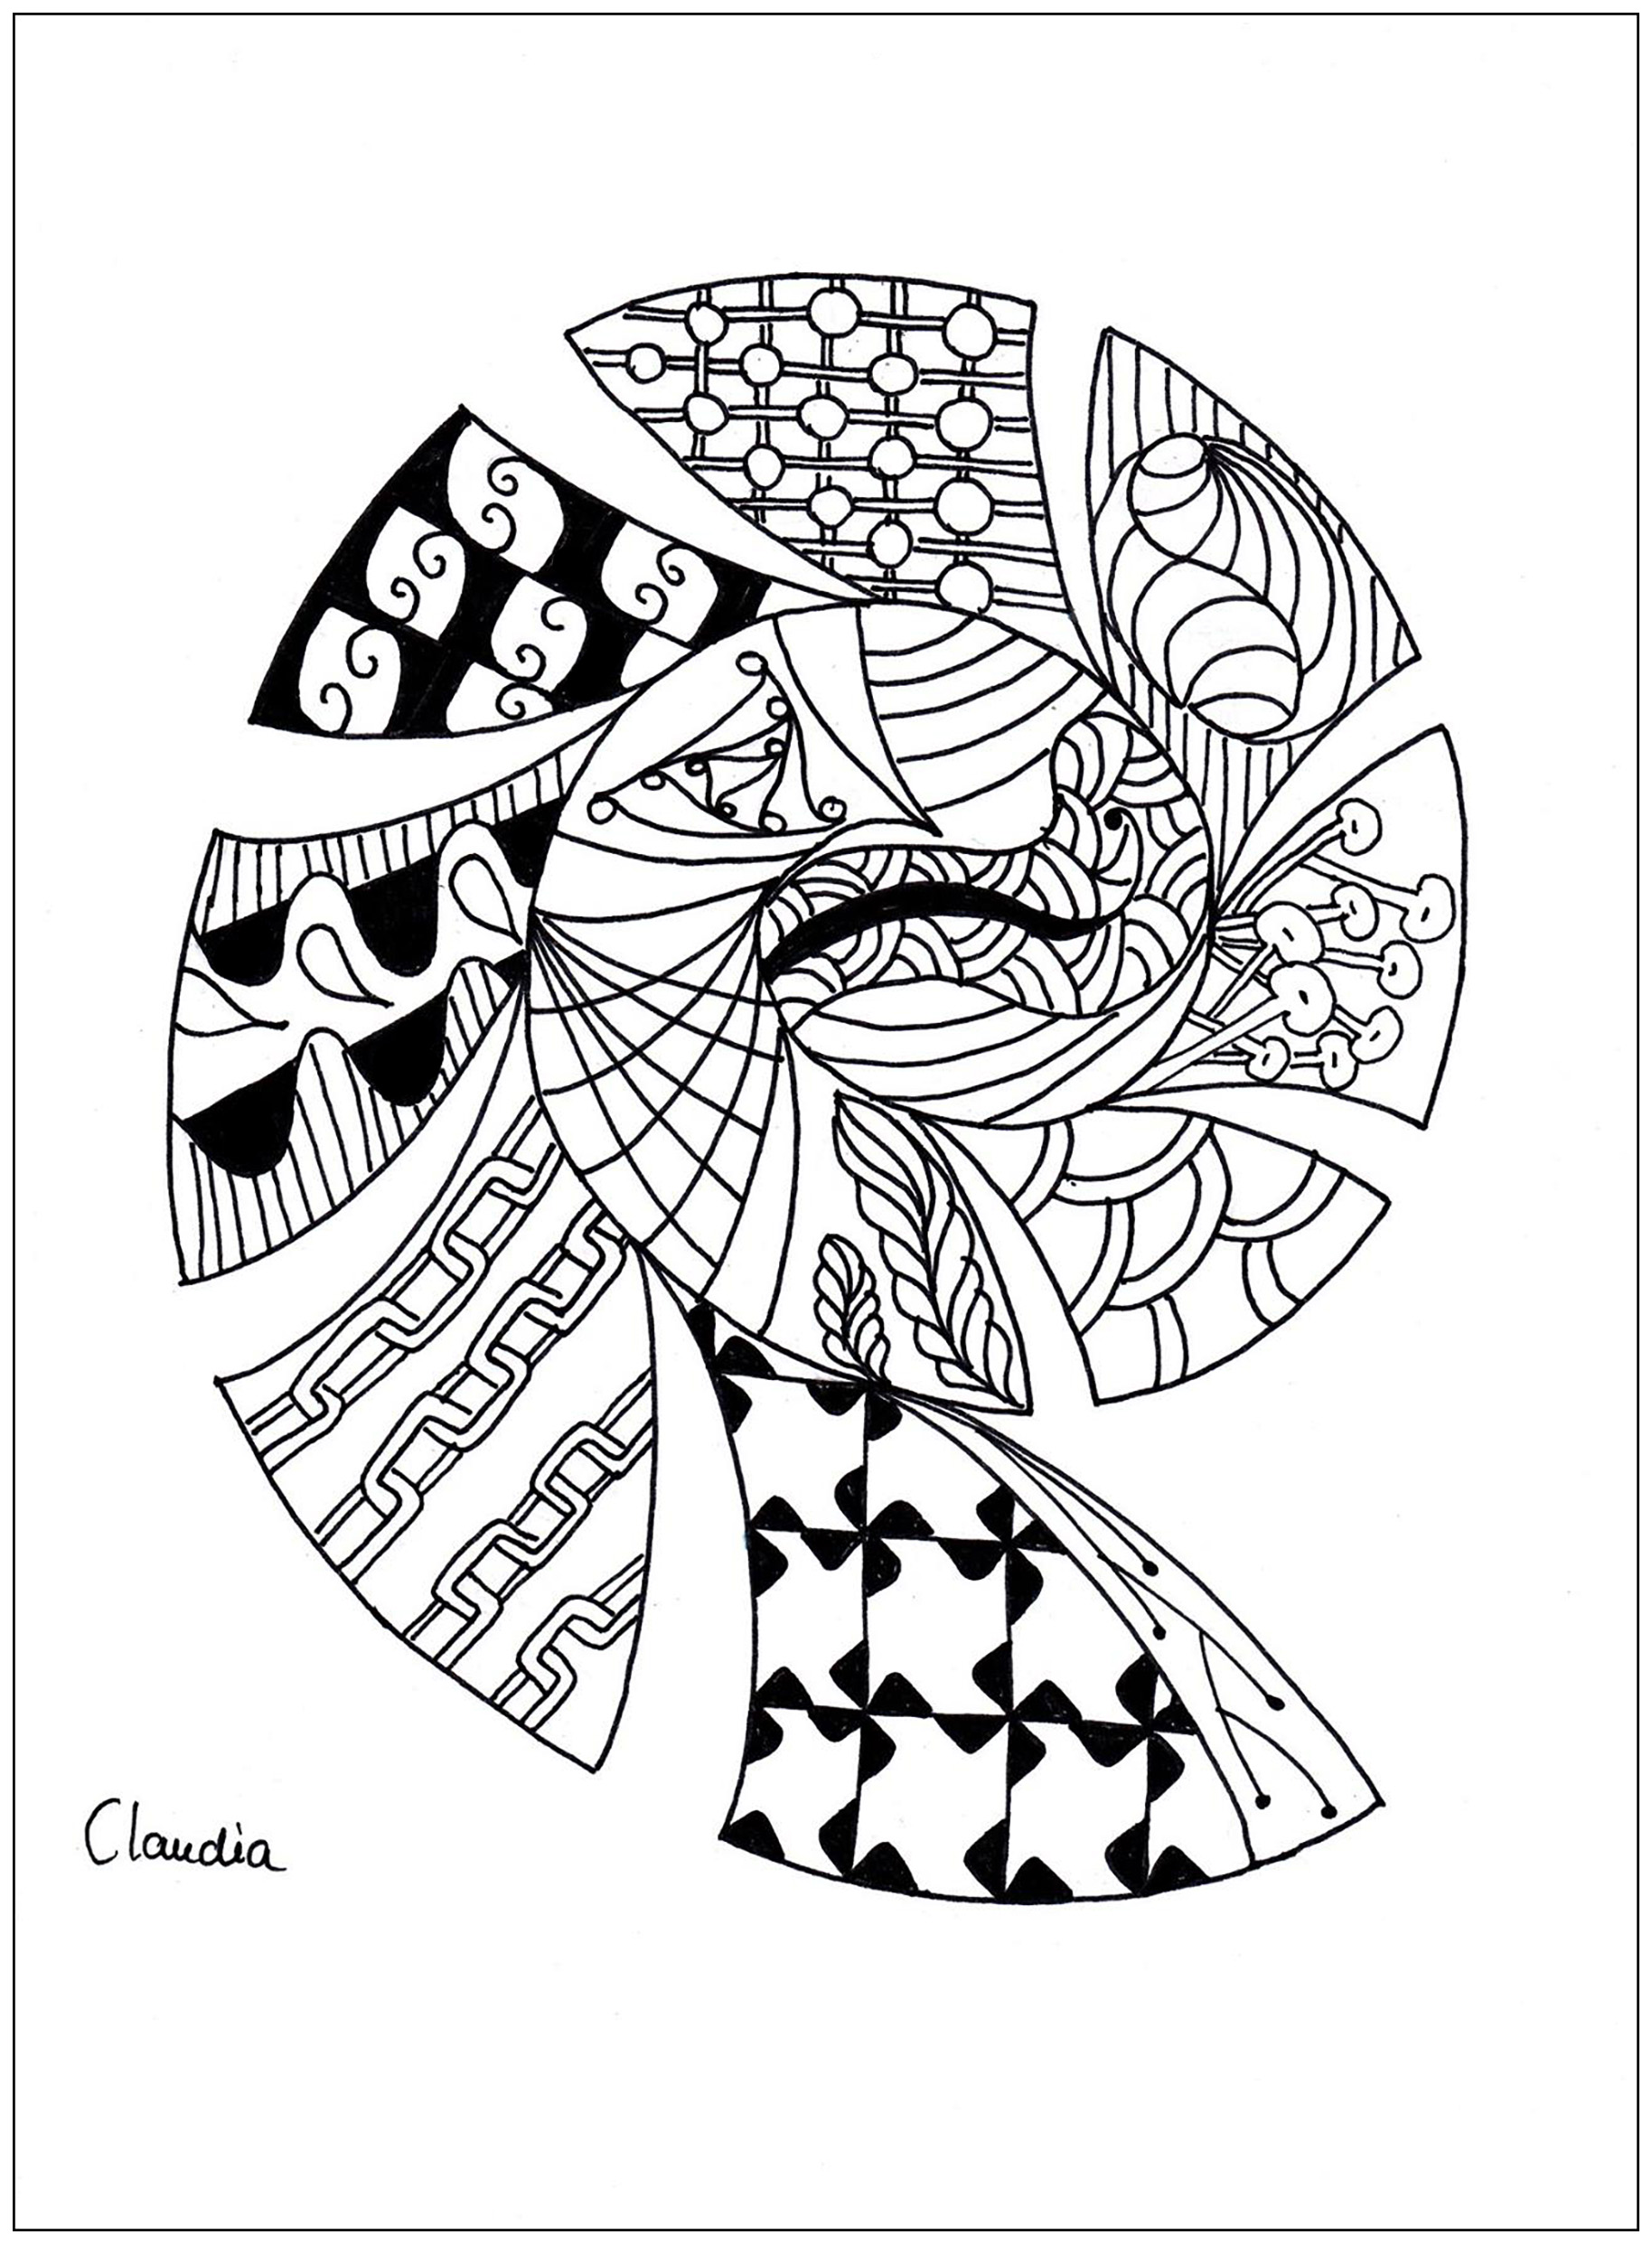 Colorear para adultos : Zentangle - 42, Artista : Claudia